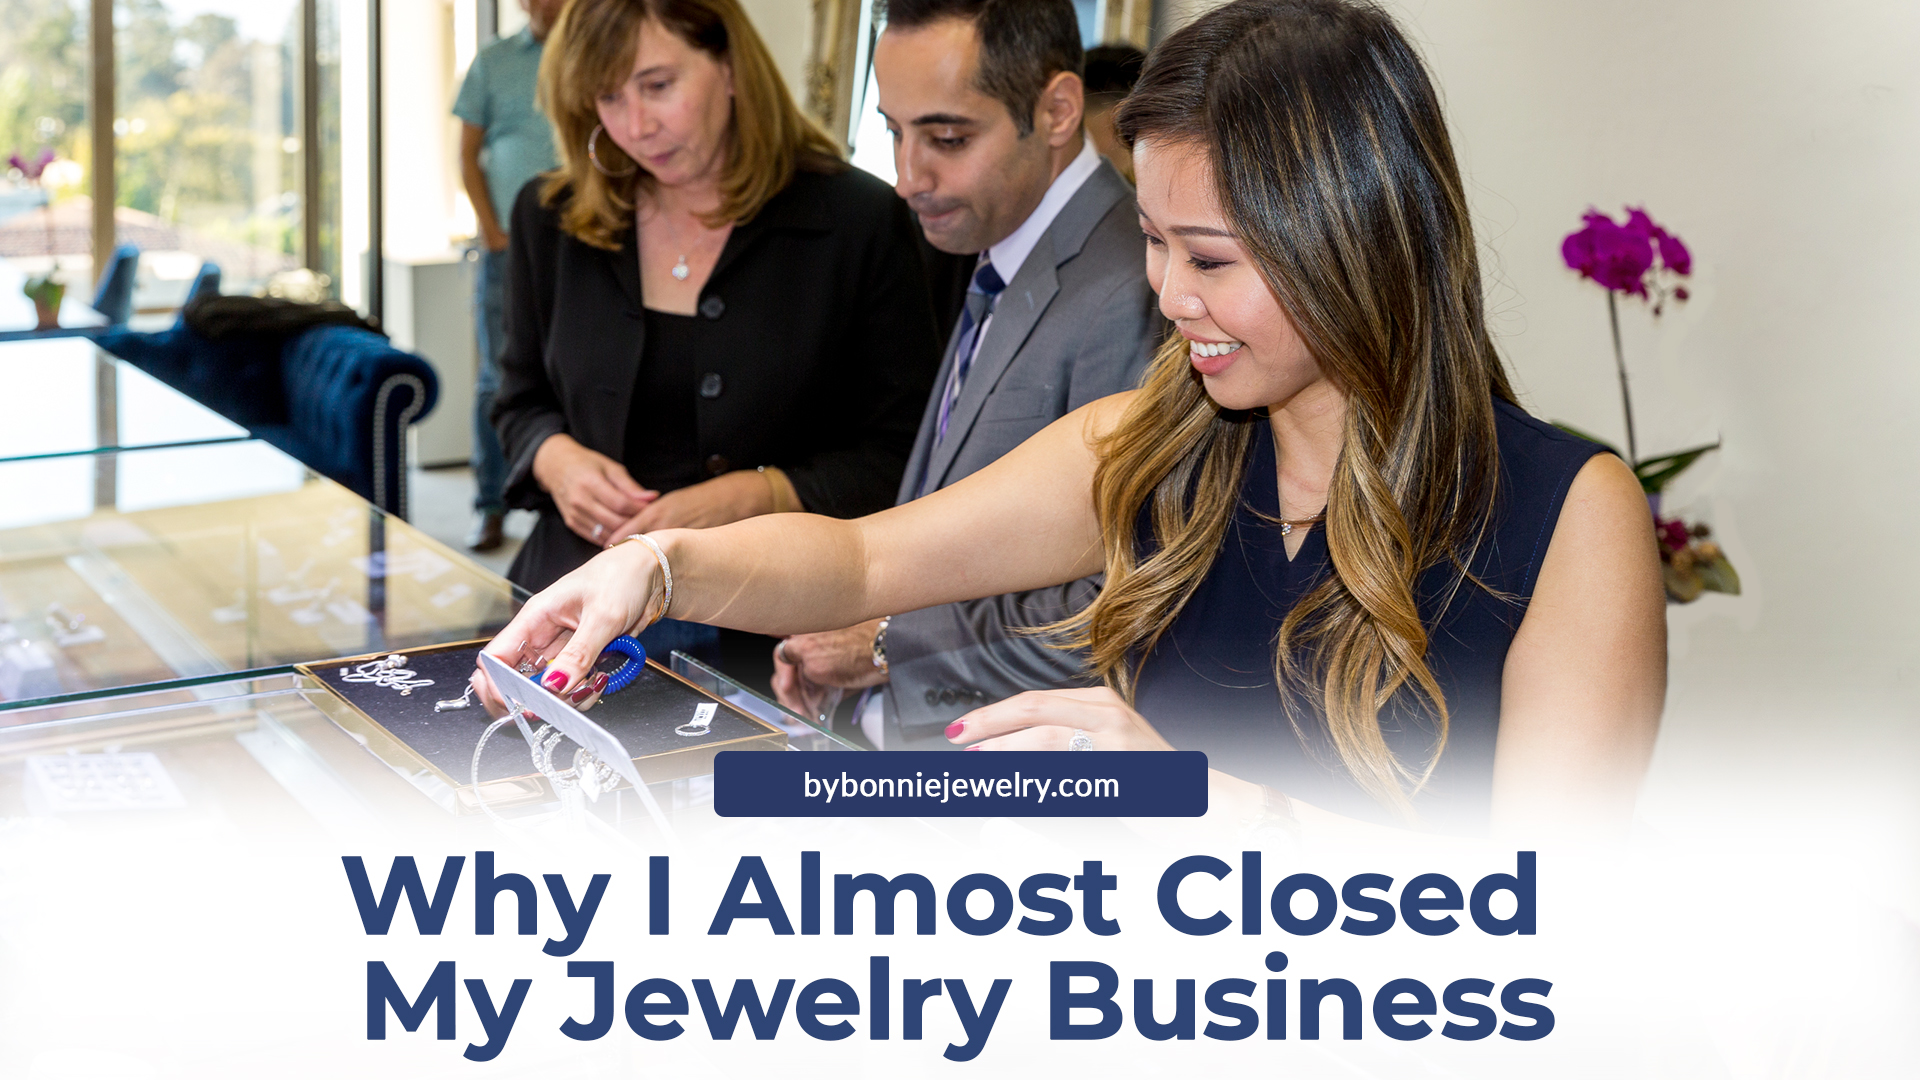 jewelry business